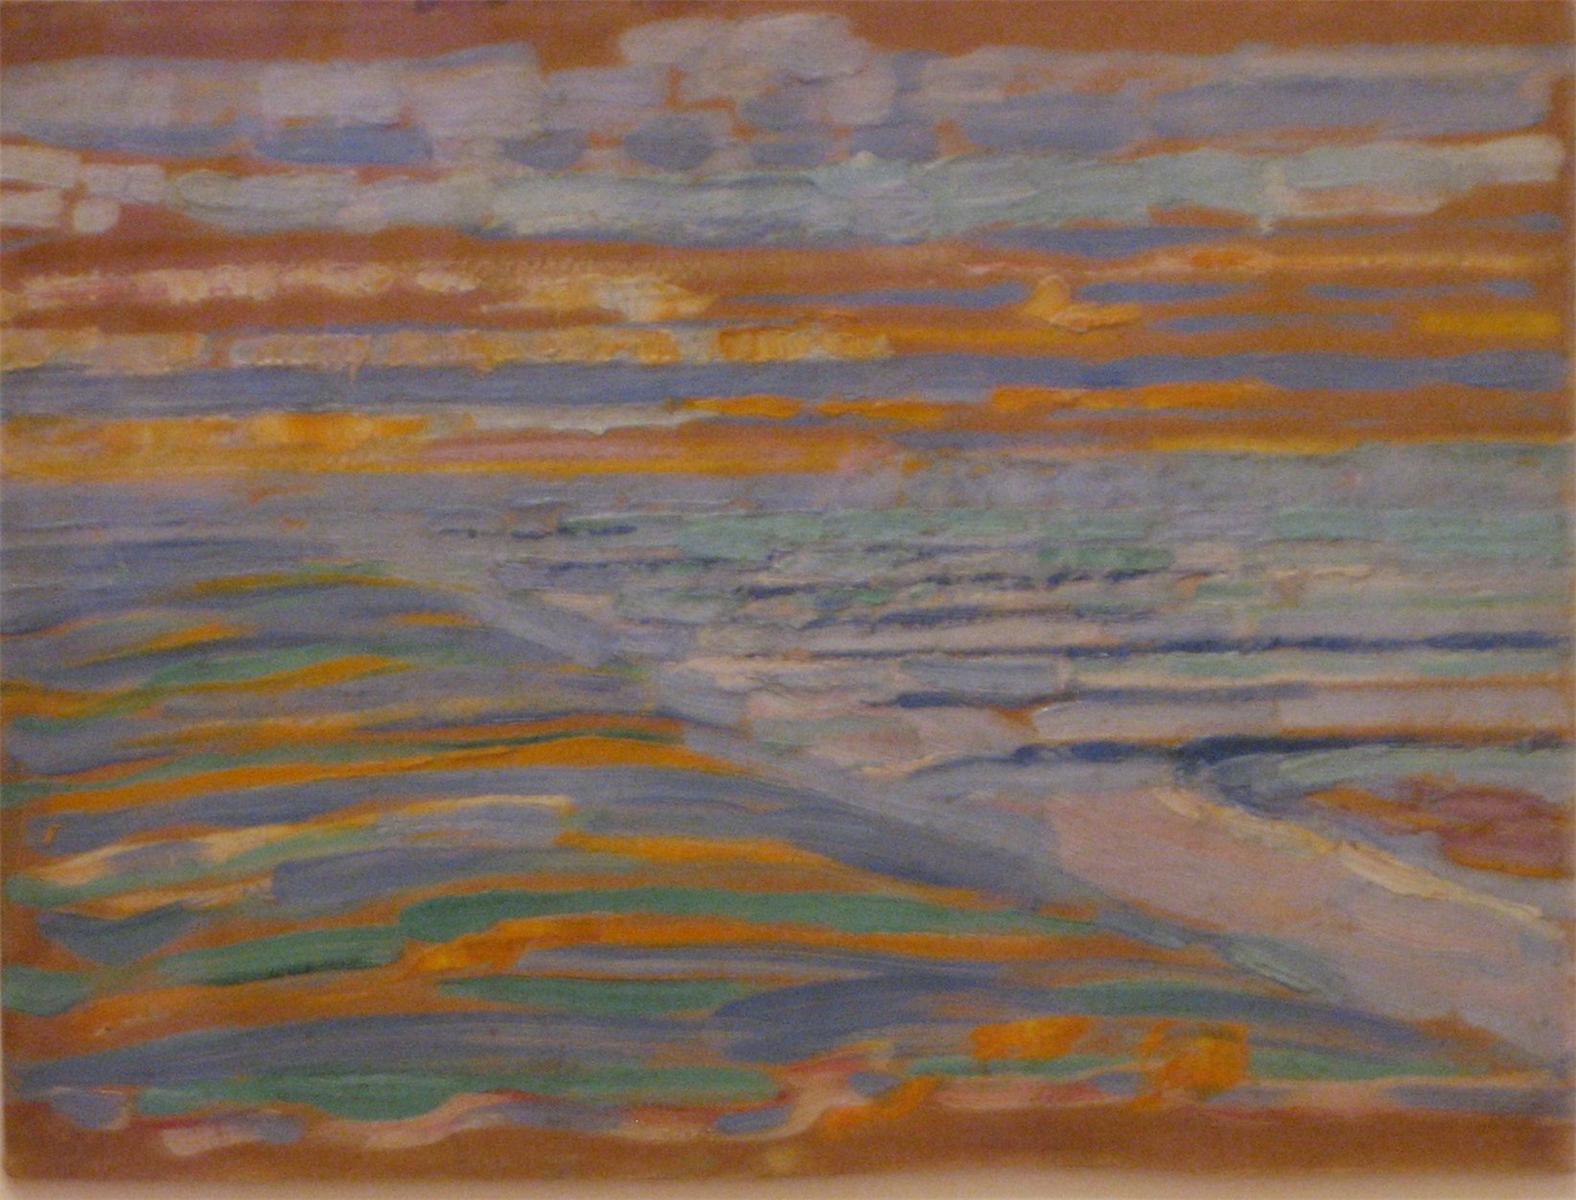 从沙丘看向海滩与码头 by 皮特 蒙德里安 - 1909 - 28.5 x 38.5 cm 現代藝術博物館